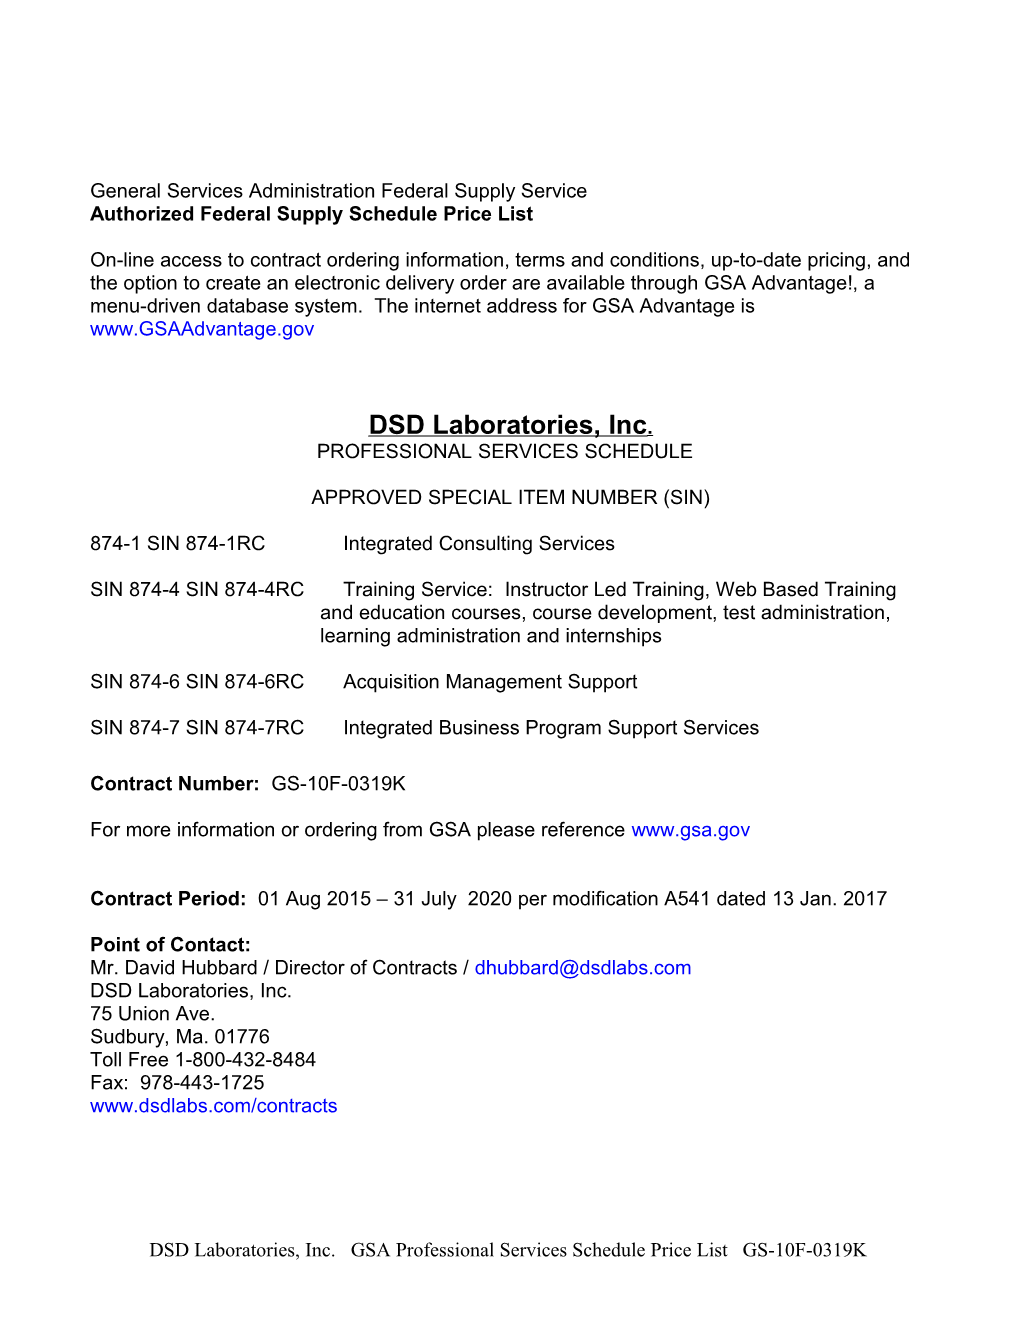 DSD Laboratories, Inc. GS-10F-0319K (PSS) Labor Category Descriptions